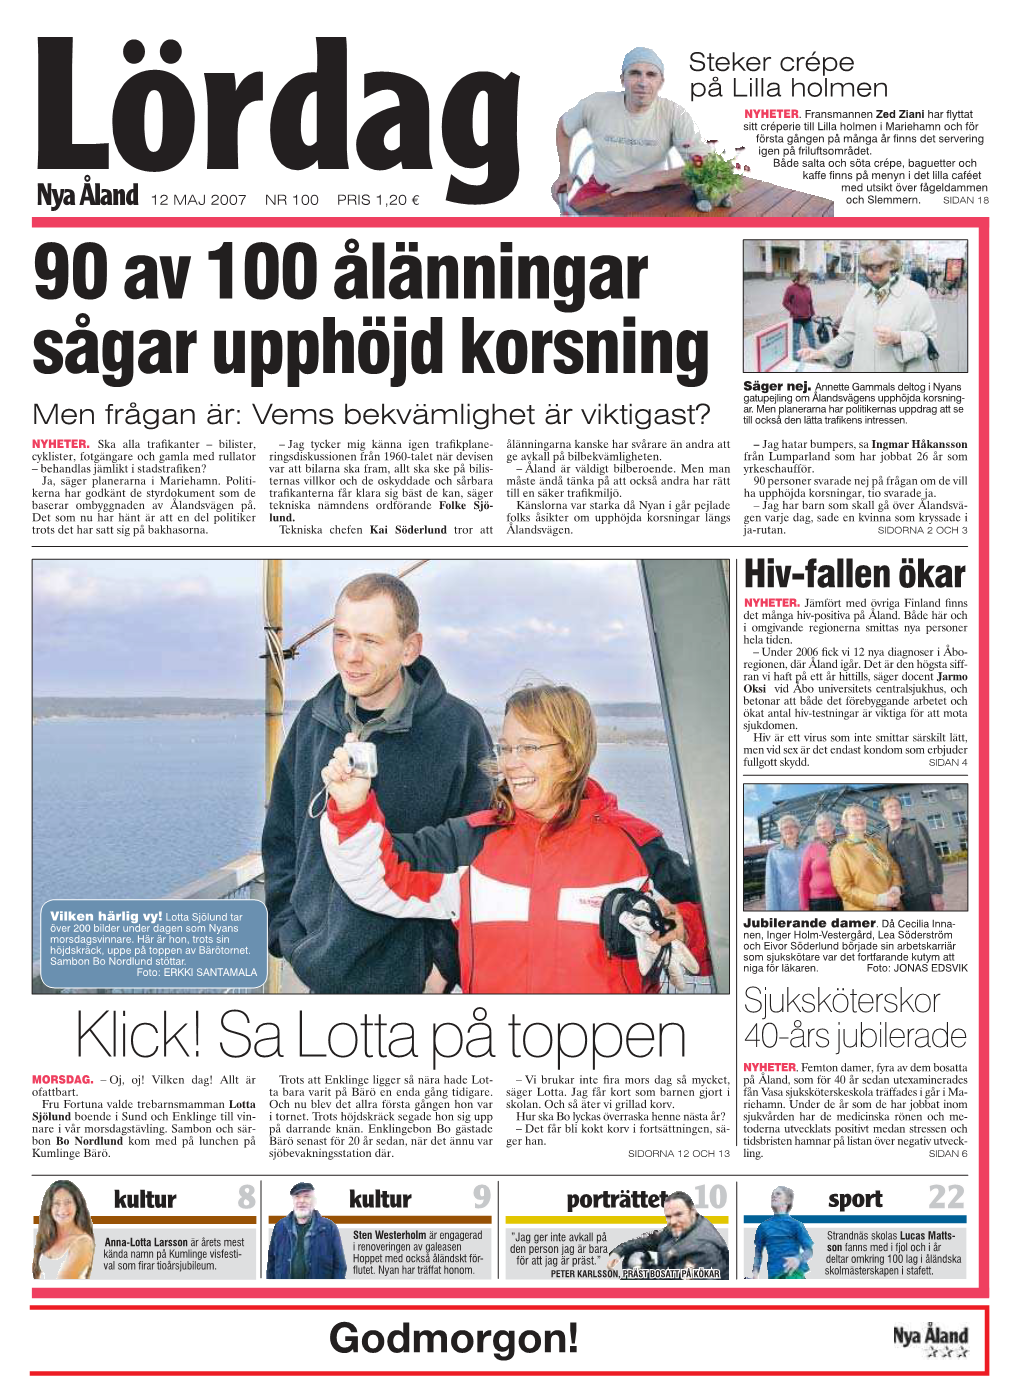 90 av 100 Ålänningar sågar upphöjd korsning säger nej docslib